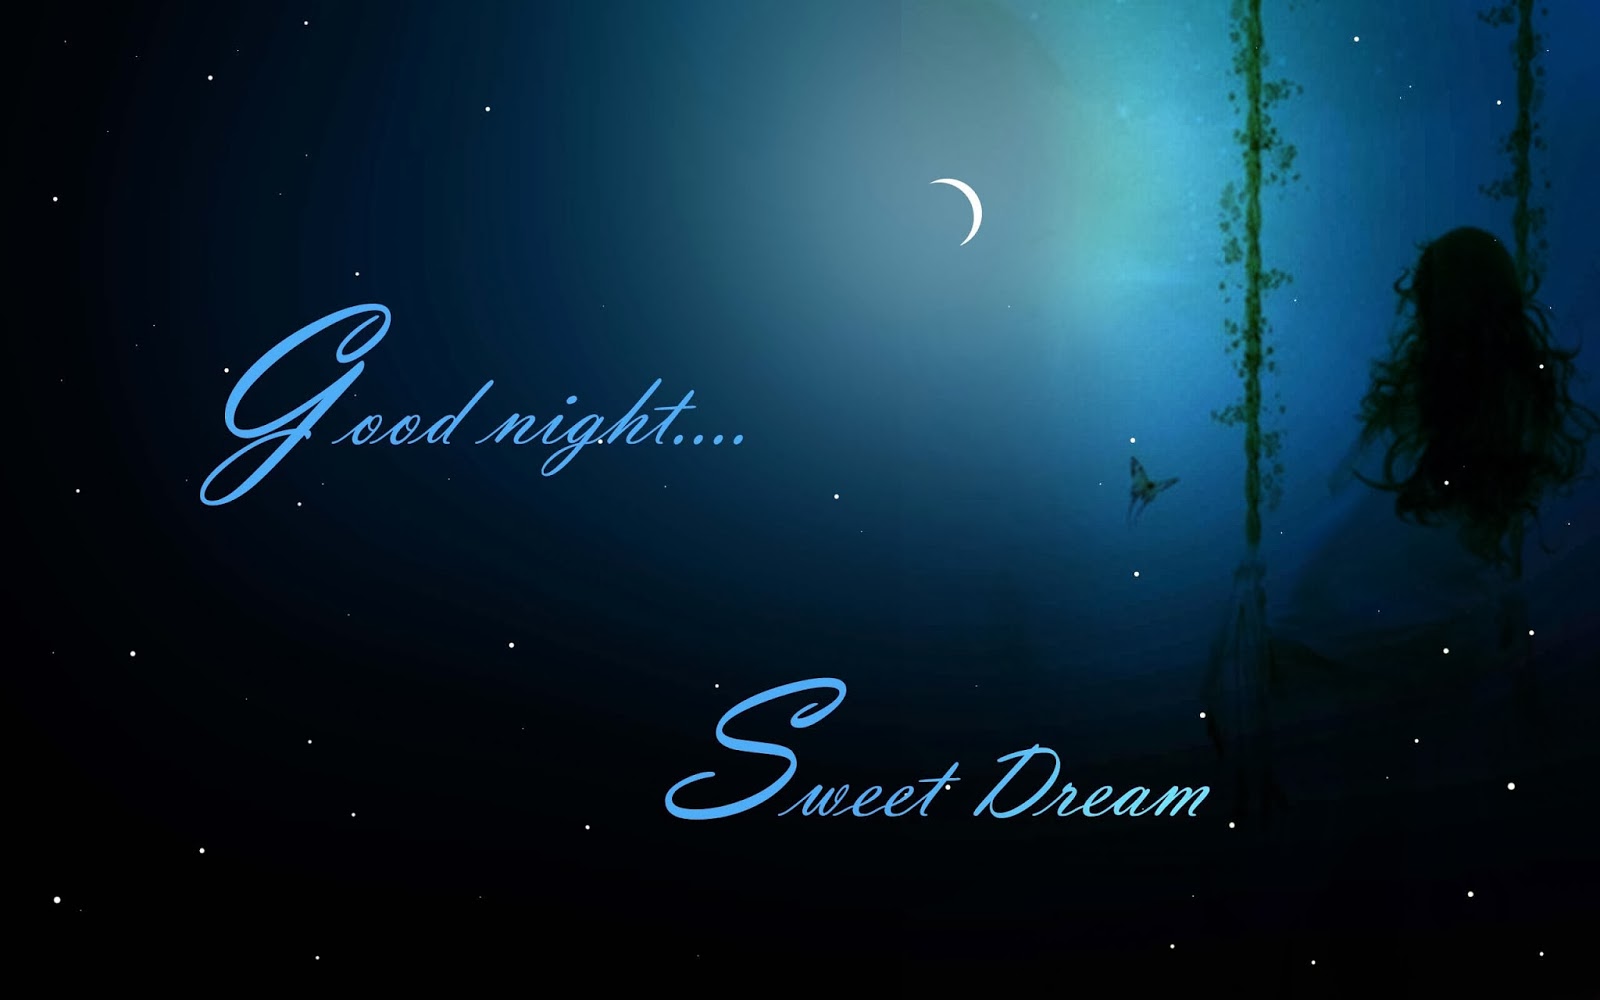 Good Morning Good Night Wallpaper Night Image Free Download